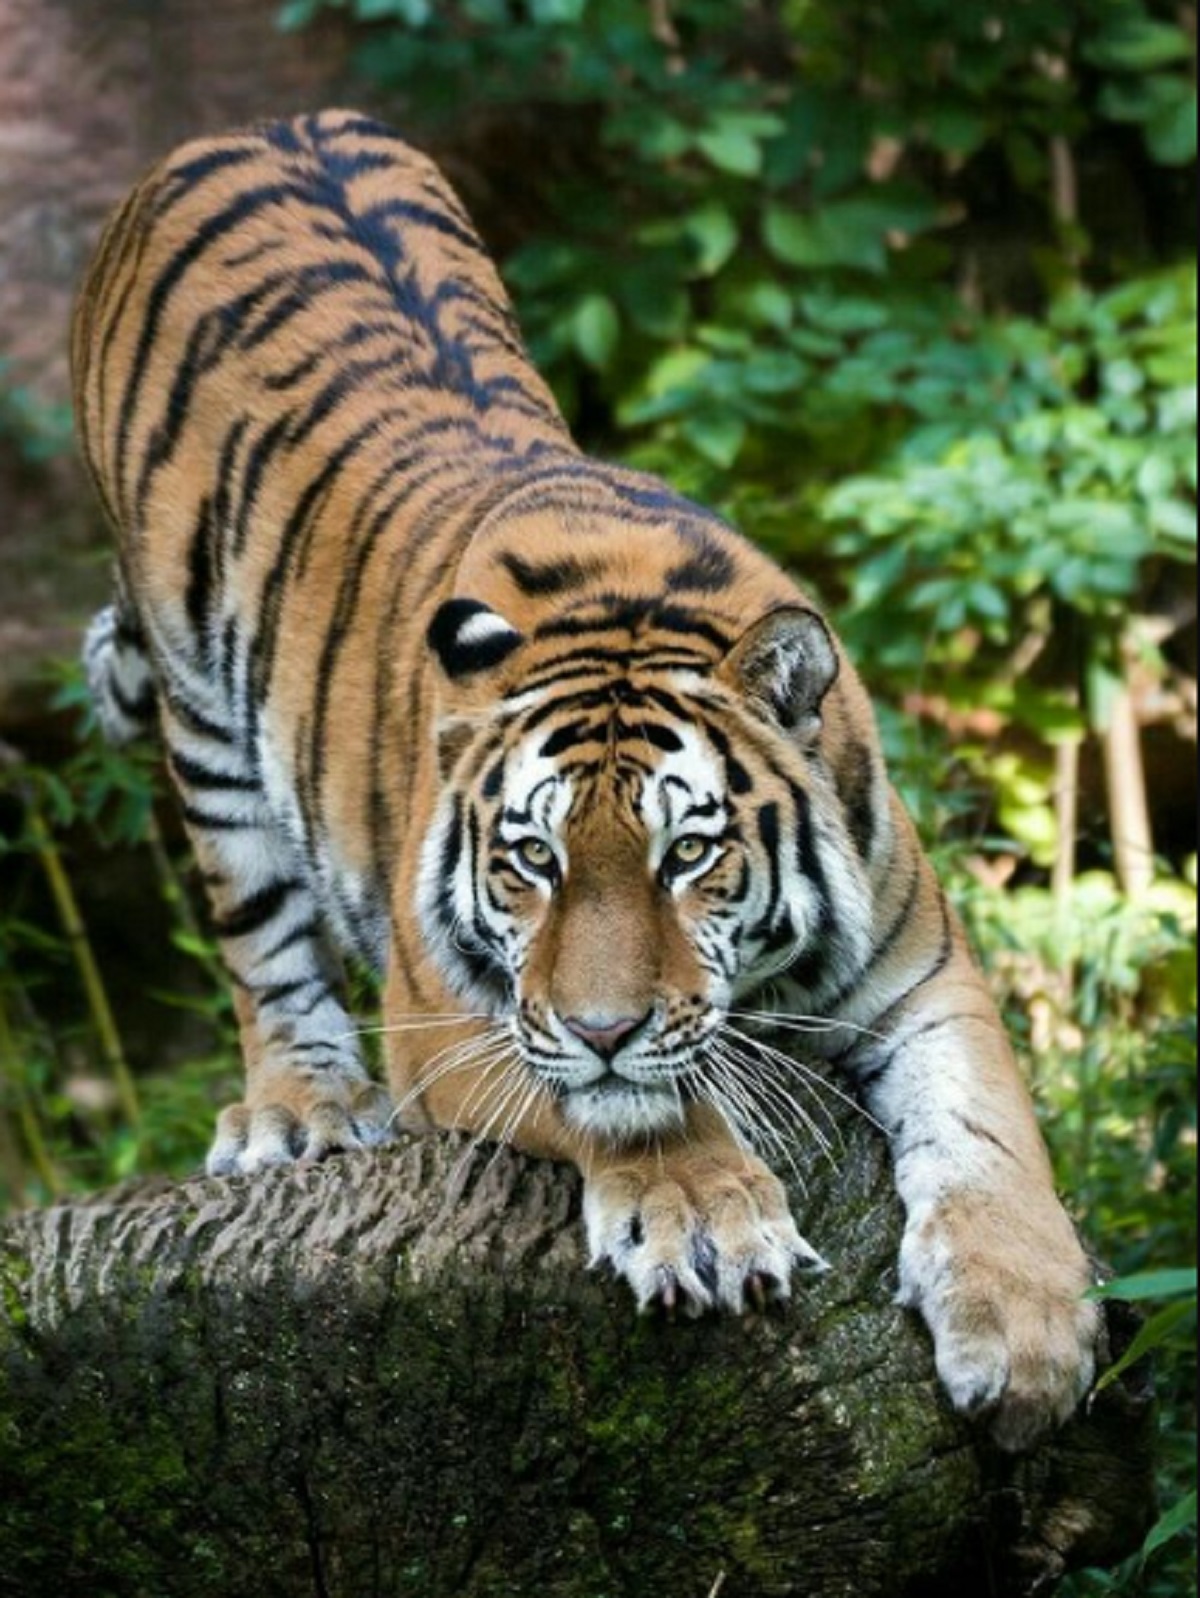 Sehelai Rambut Menjadi Bukti Kuat Bahwa Harimau Jawa Belum Punah, Ini Kata BRIN